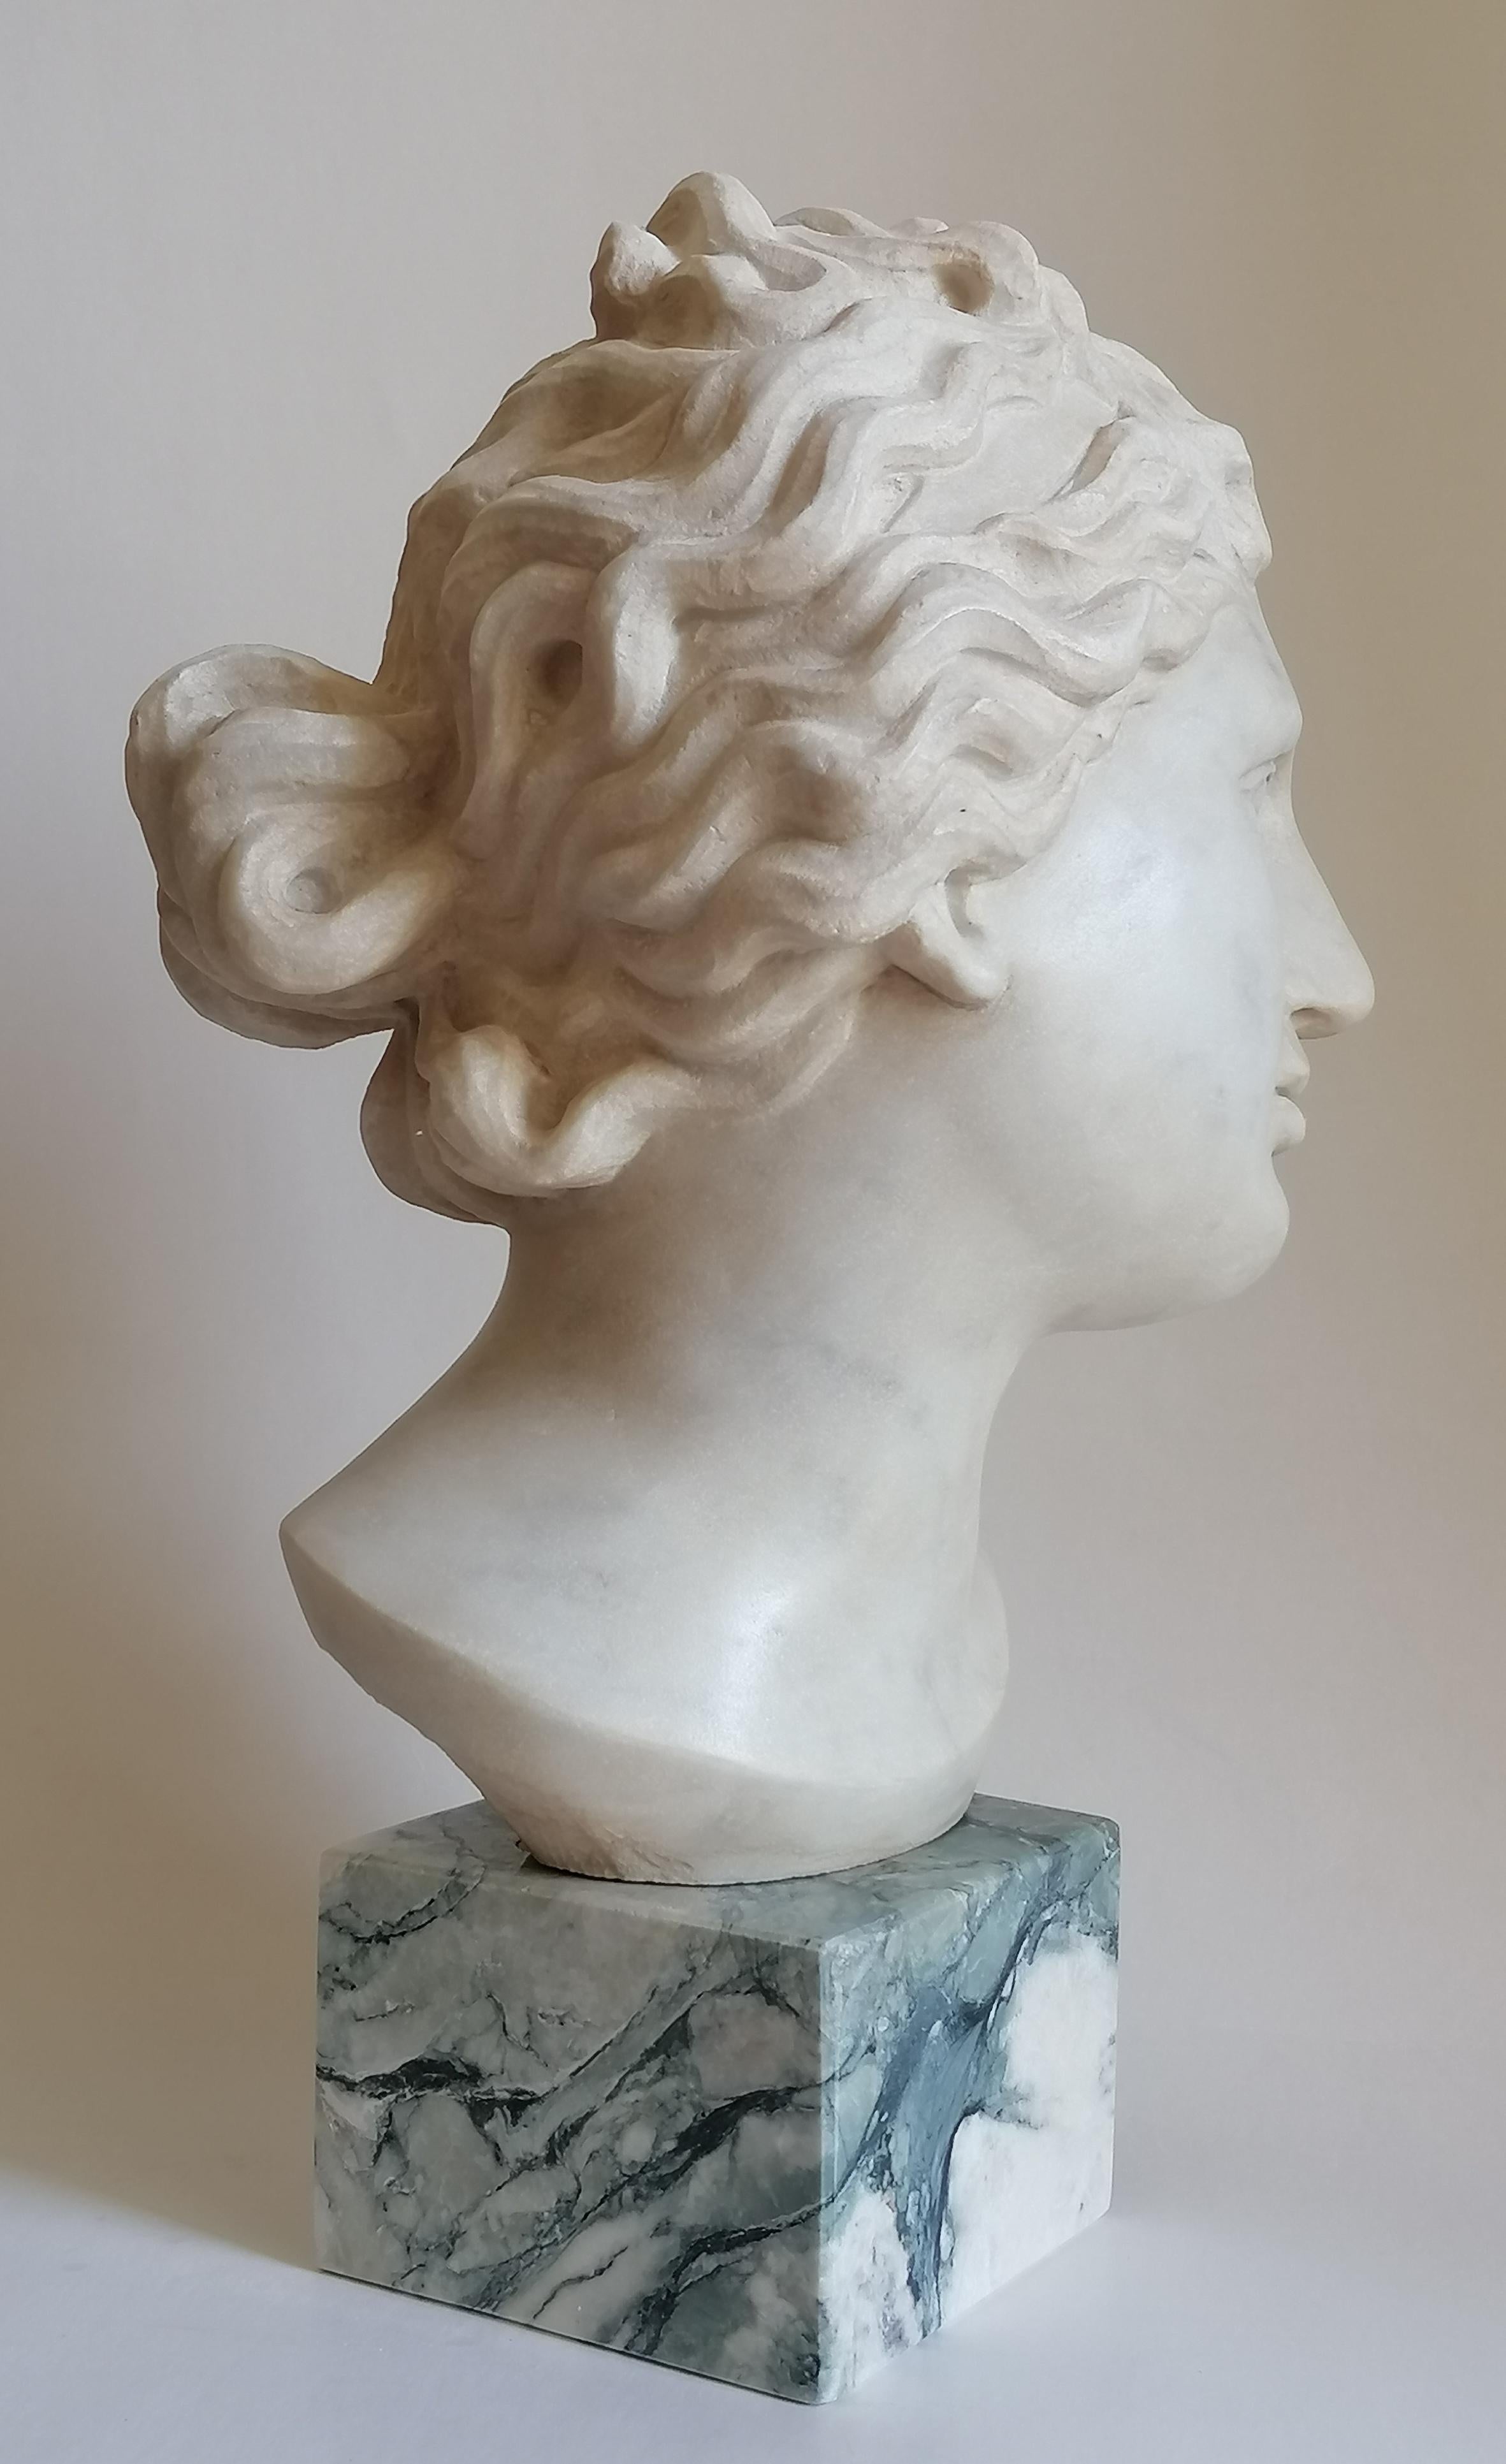 Contemporary Venere Medici -testa scolpita su marmo bianco di Carrara -made in Italy For Sale